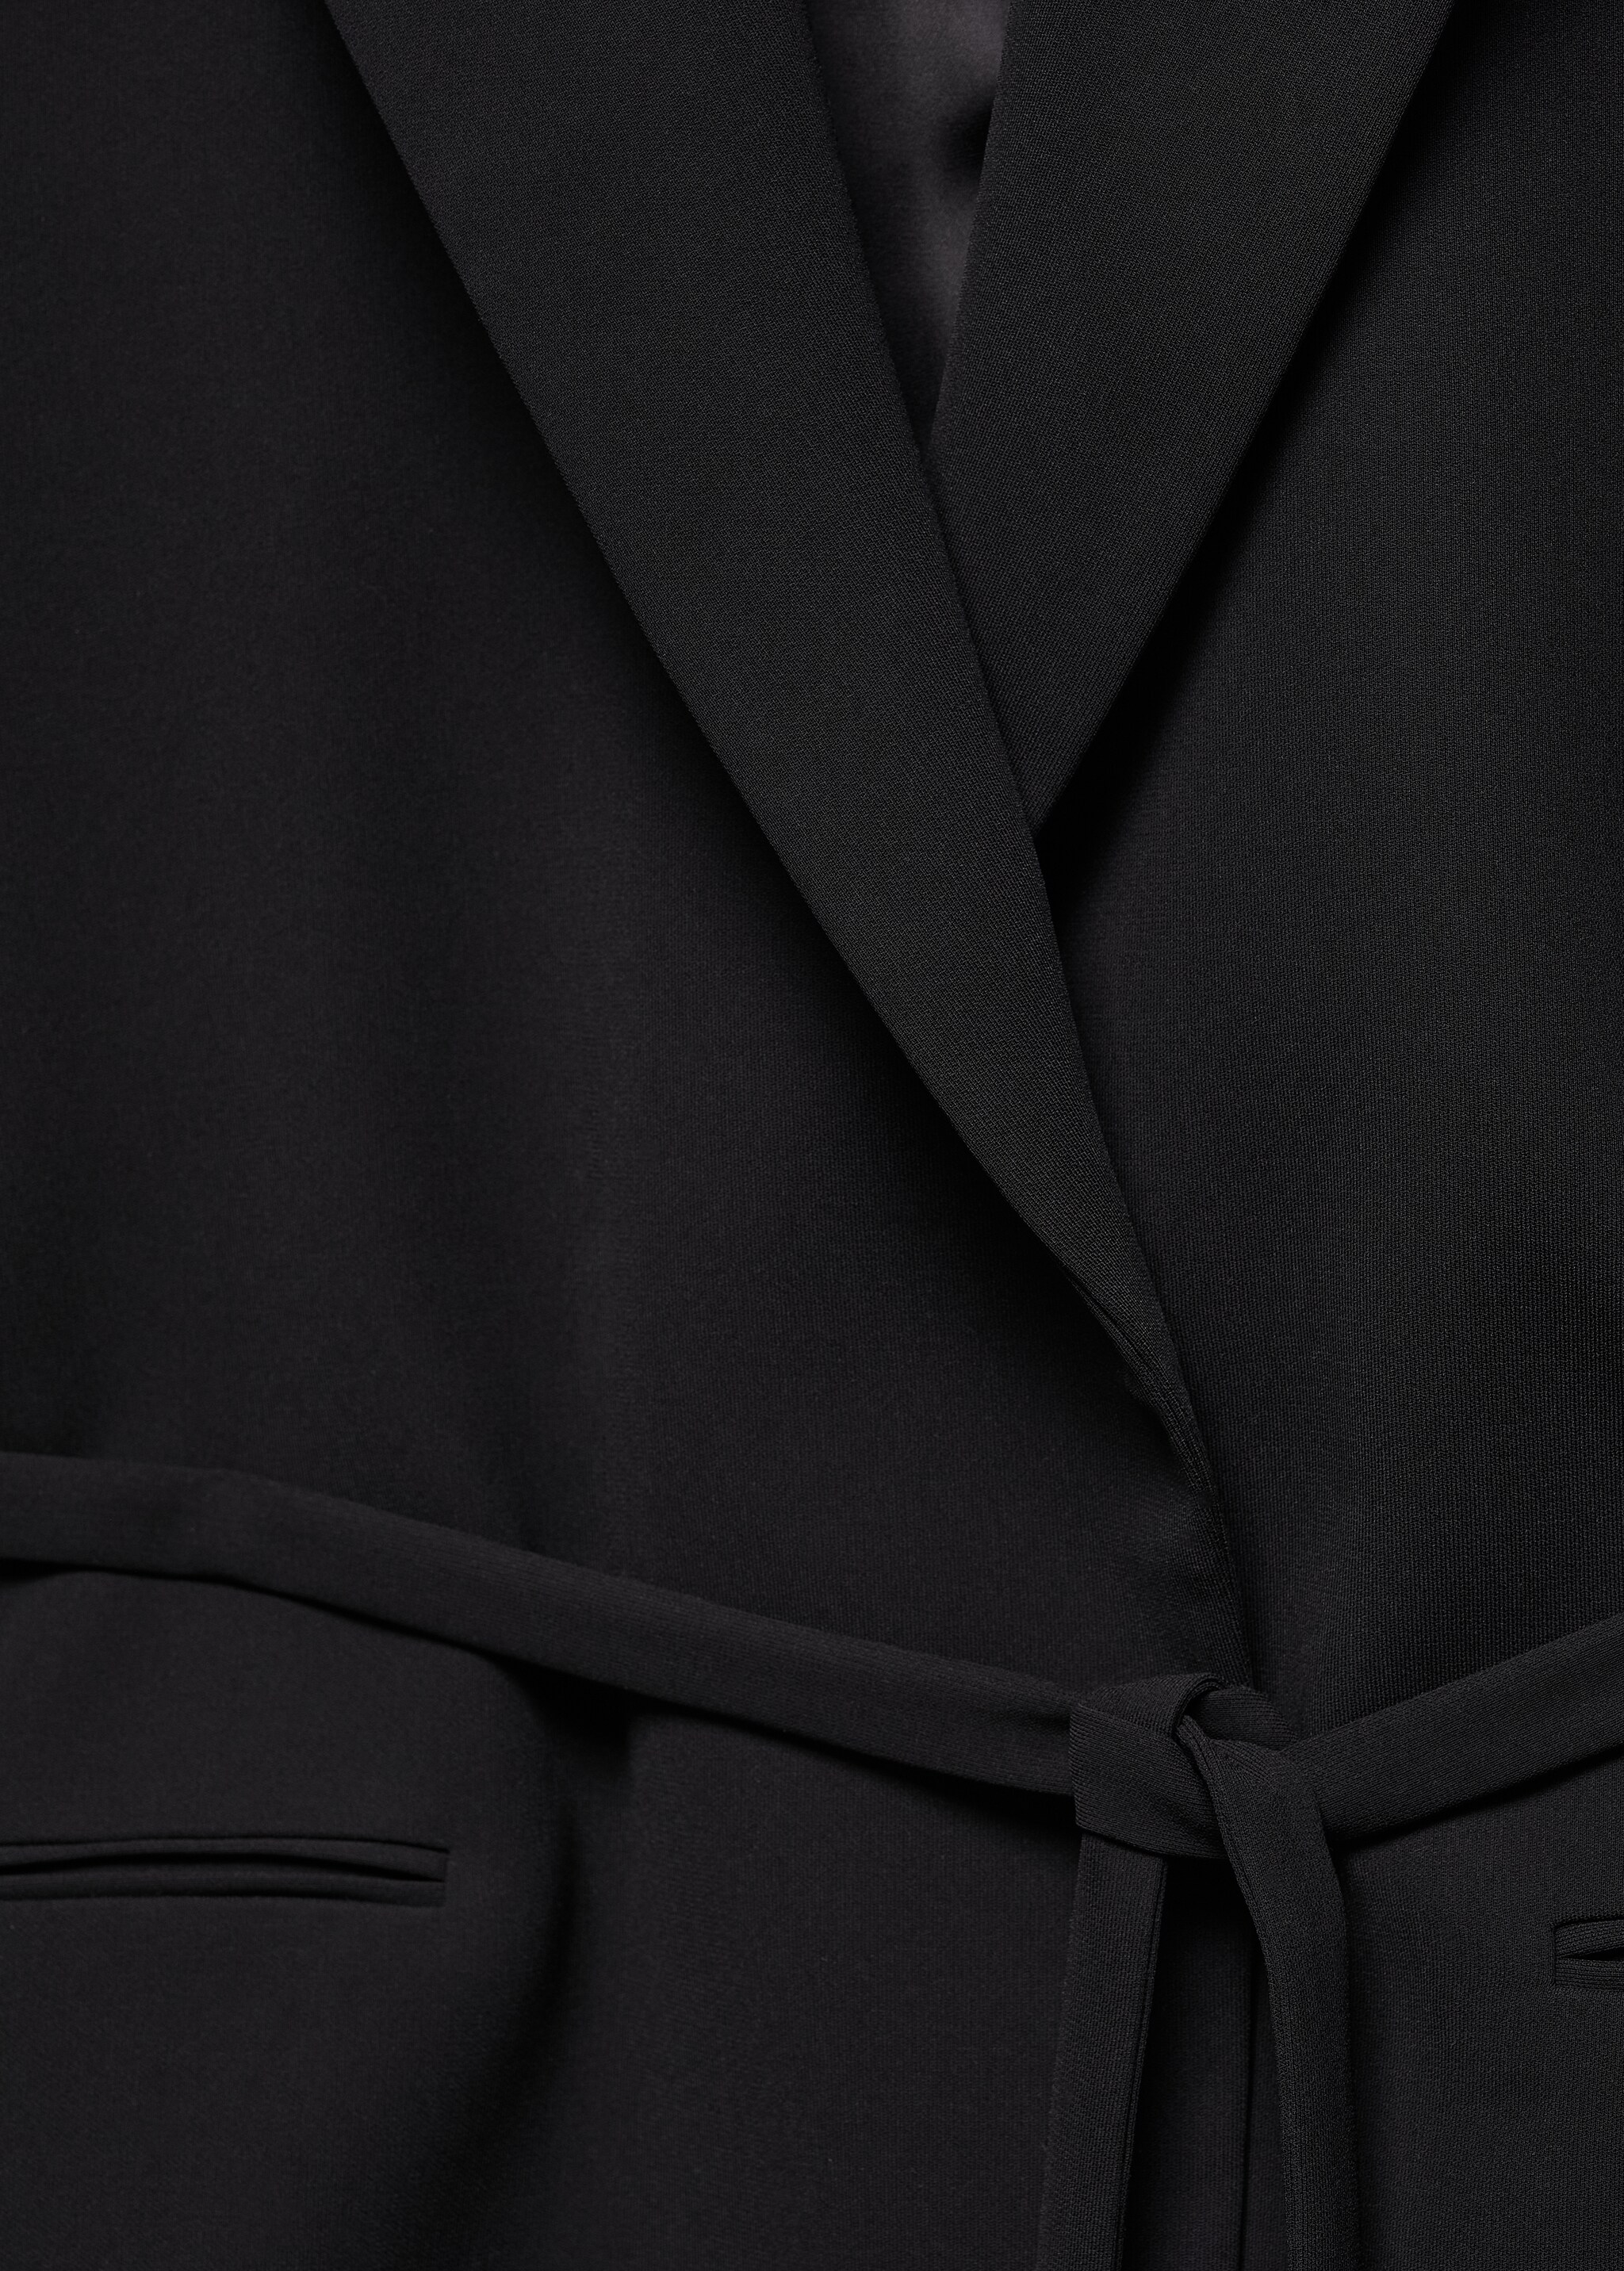 Belt suit blazer - Details of the article 8